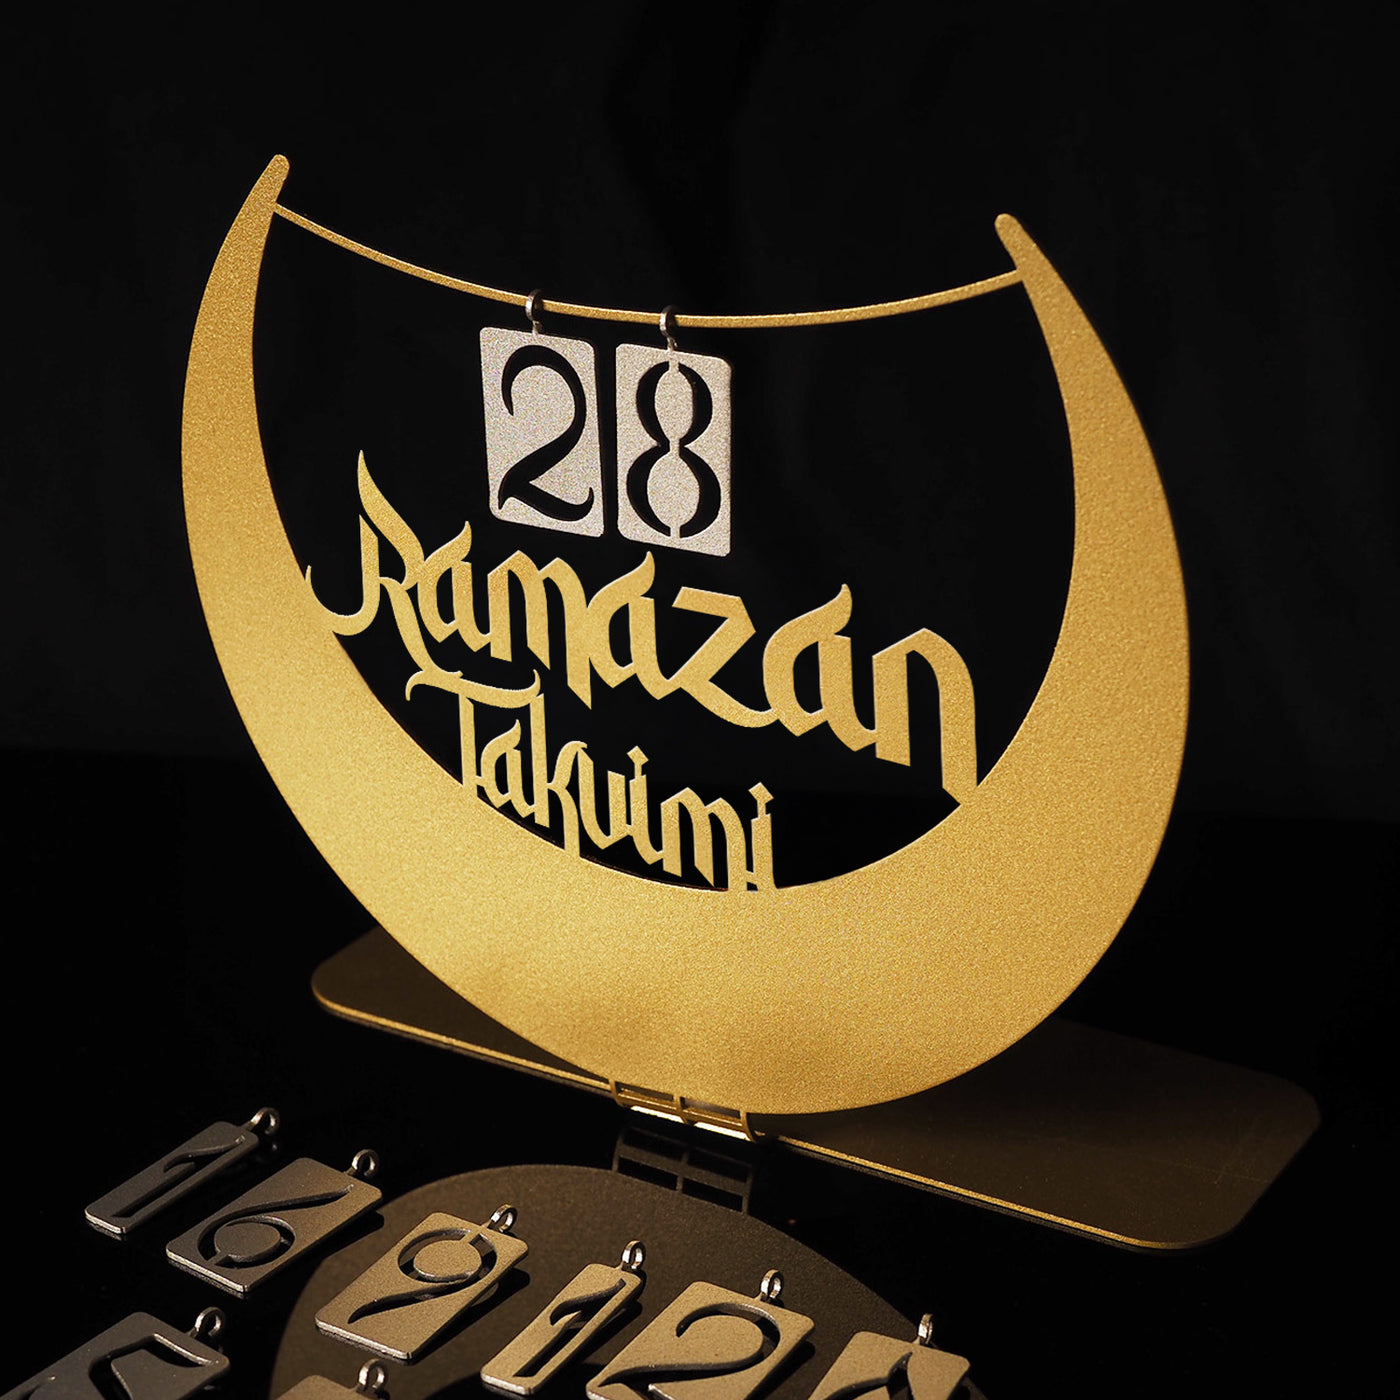 Ramazan Takvimi Yazılı Metal Masaüstü Dekor - WAMH147